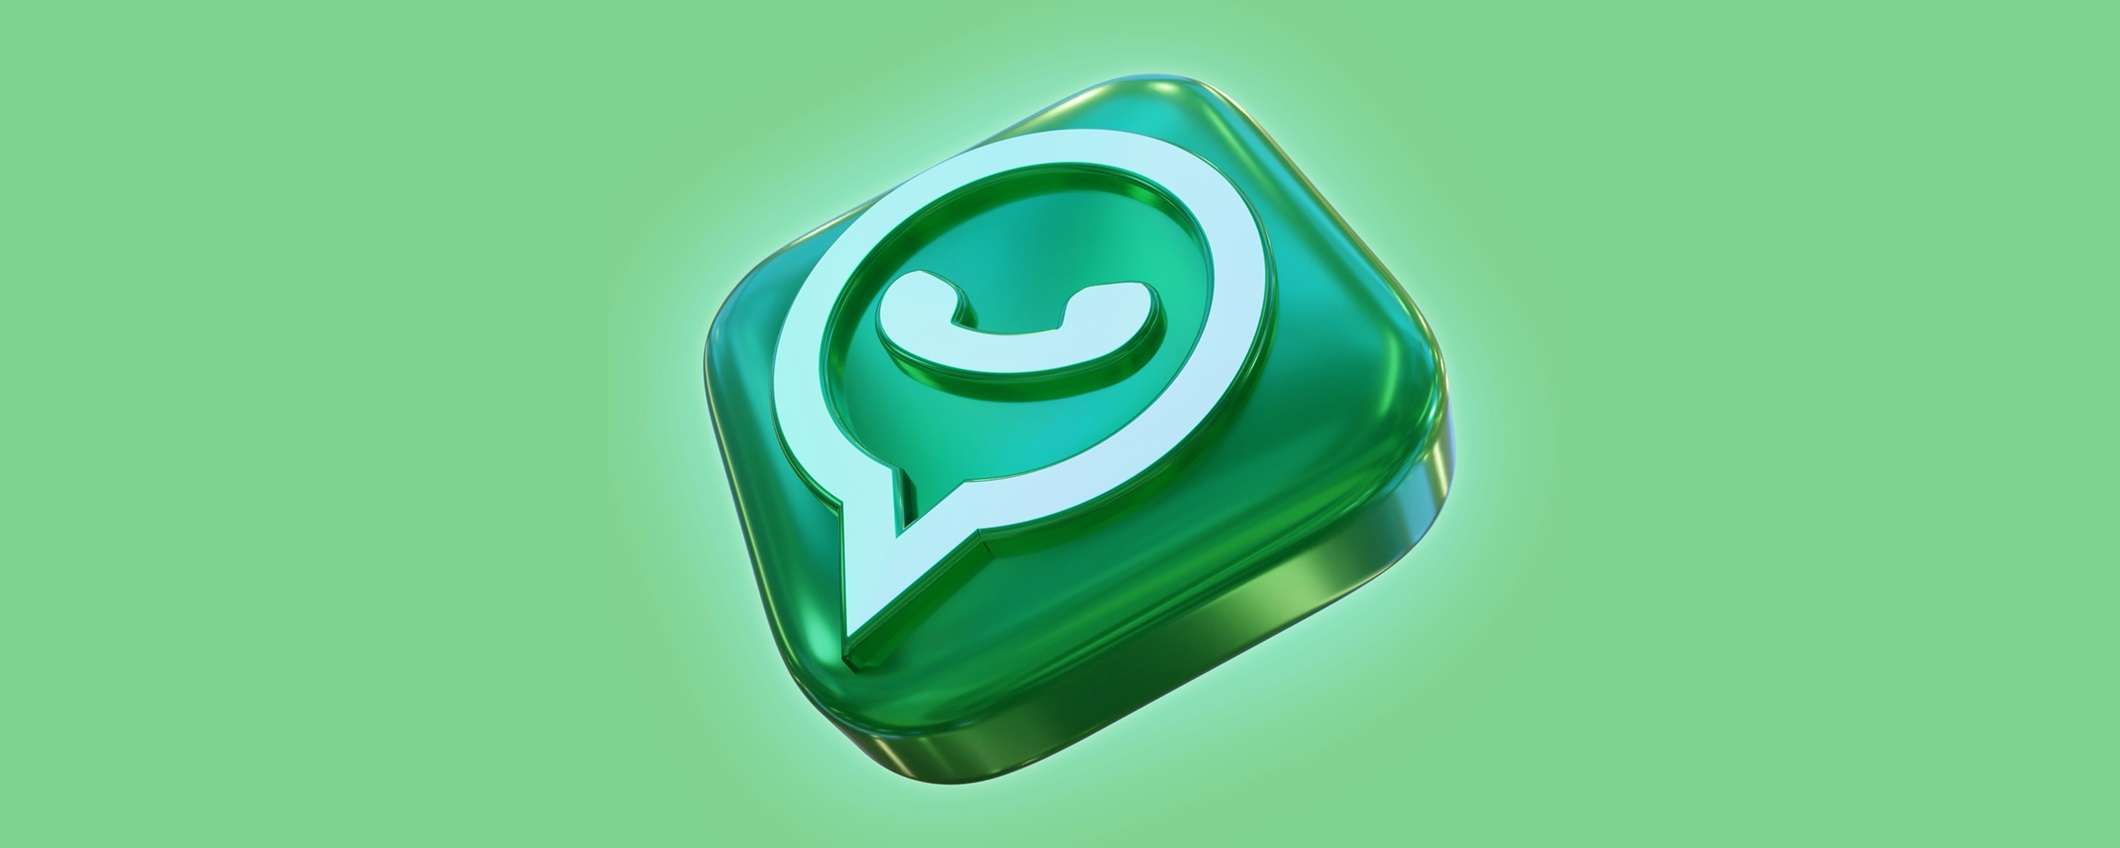 Come programmare messaggi su WhatsApp